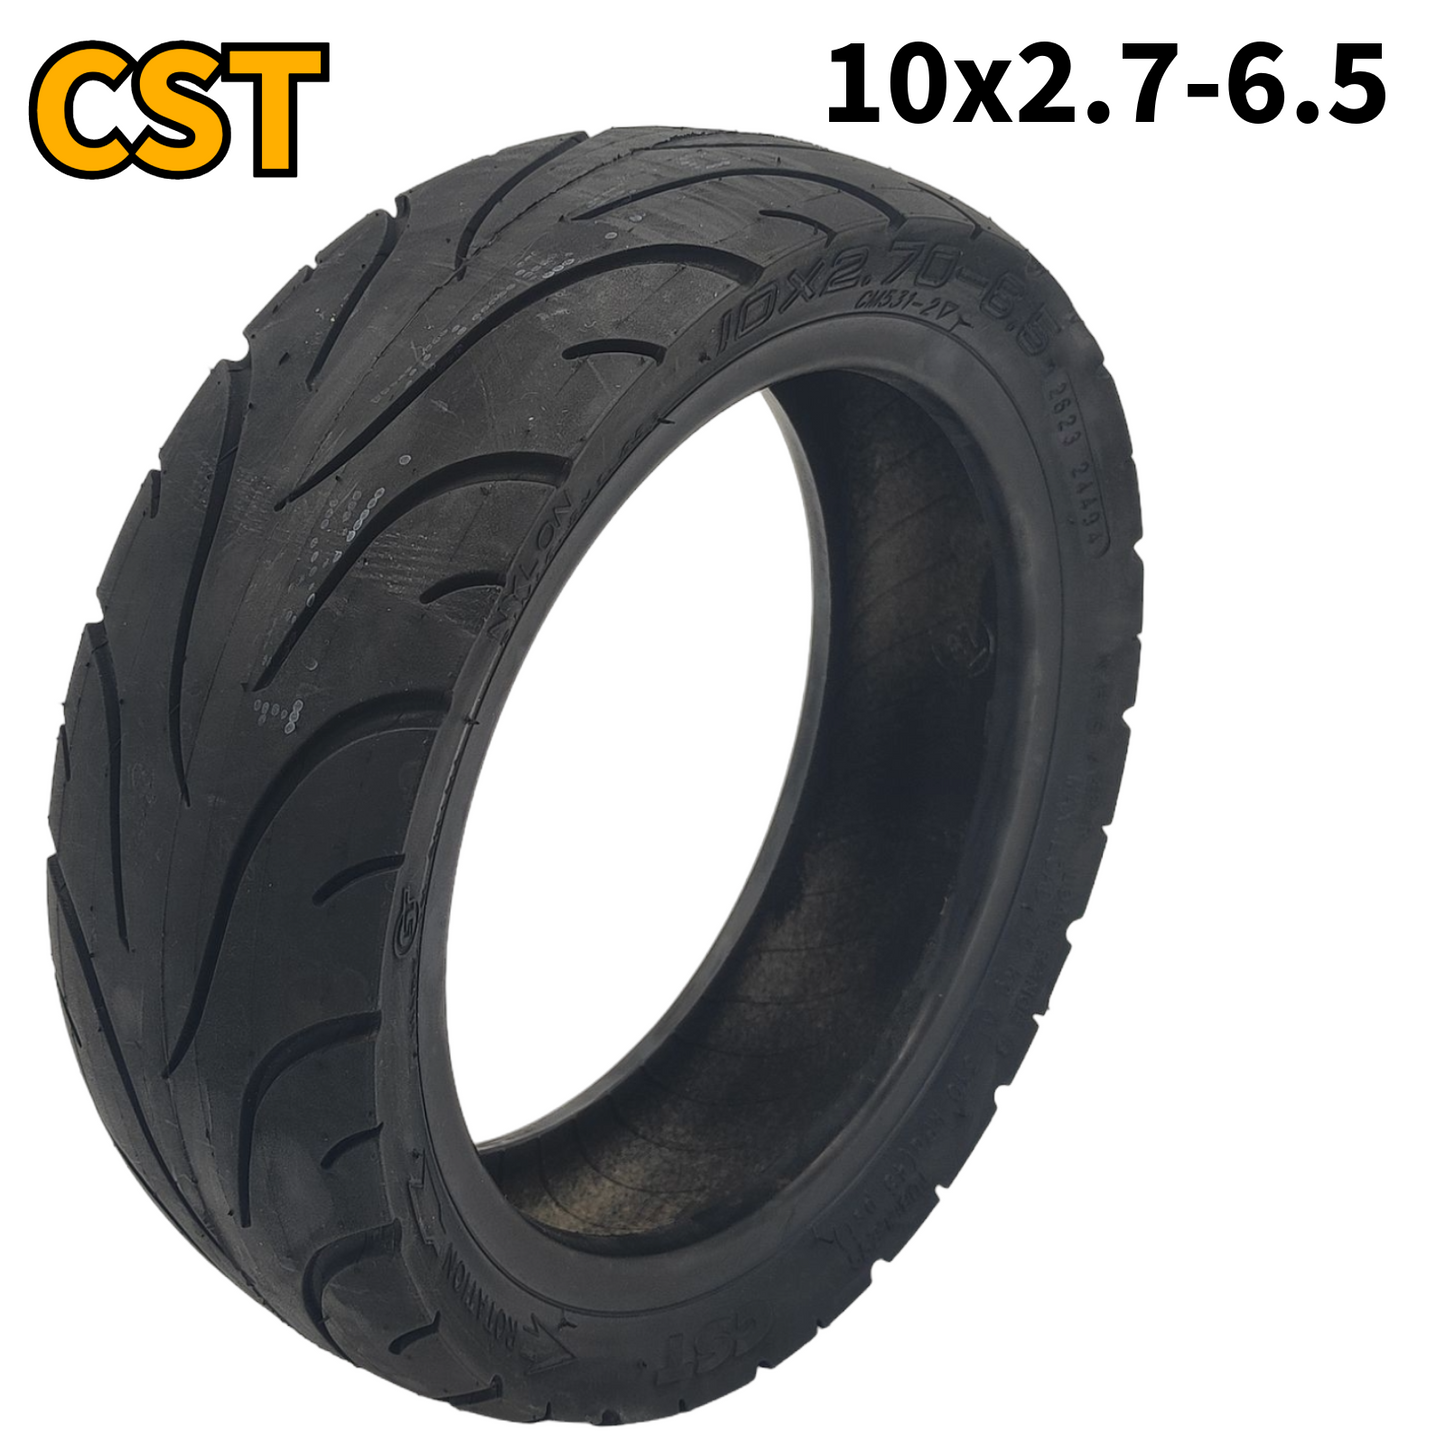 CST band 10x2.7-6.5 tubeless zonder gellaag met ventiel